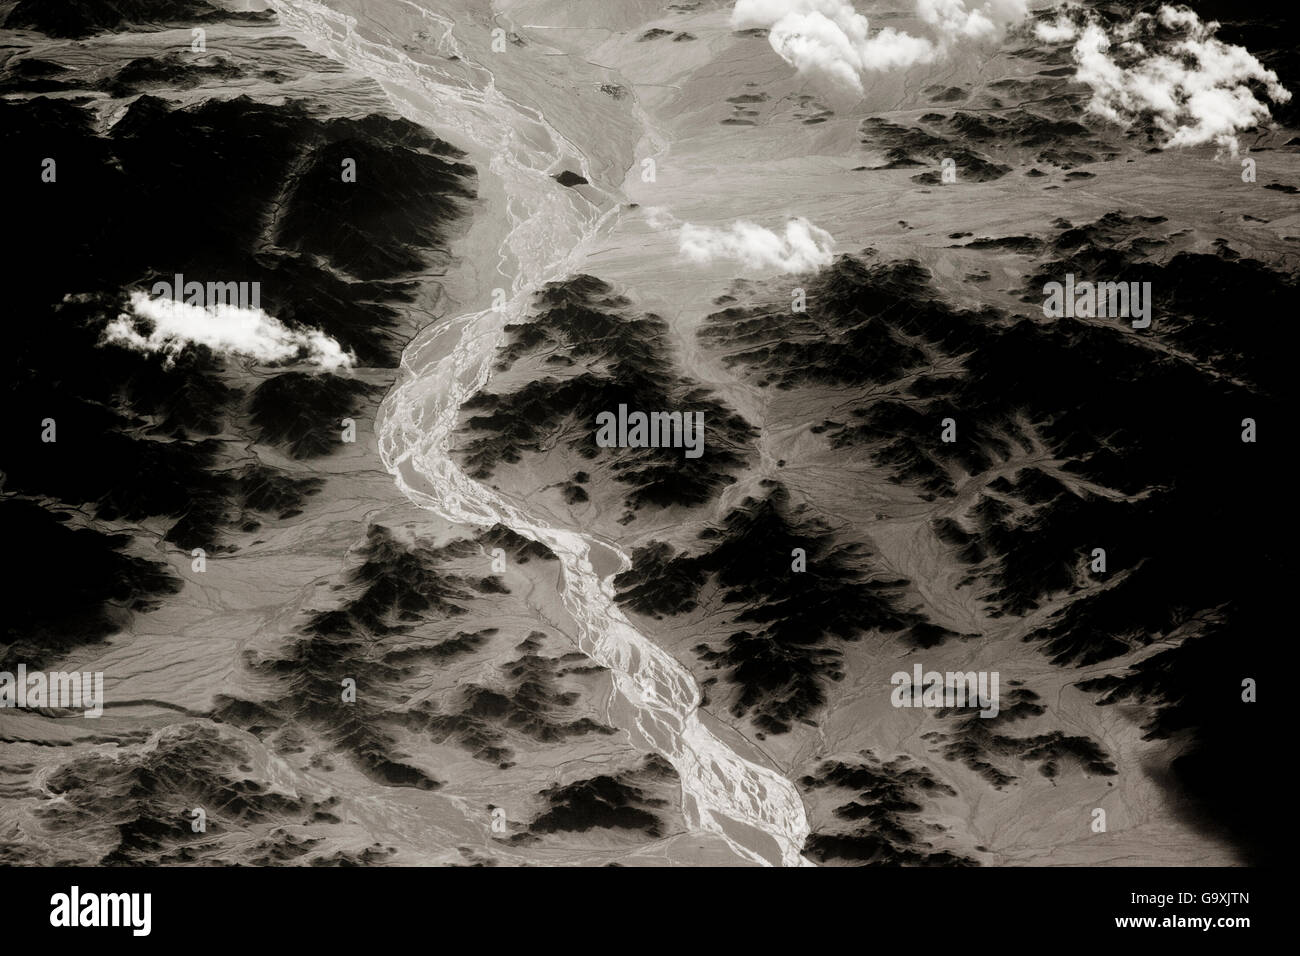 Vue de plan de cours d'eau qui coule à travers la vallée de montagne, Saravan, sud-est de l'Iran, décembre. Banque D'Images